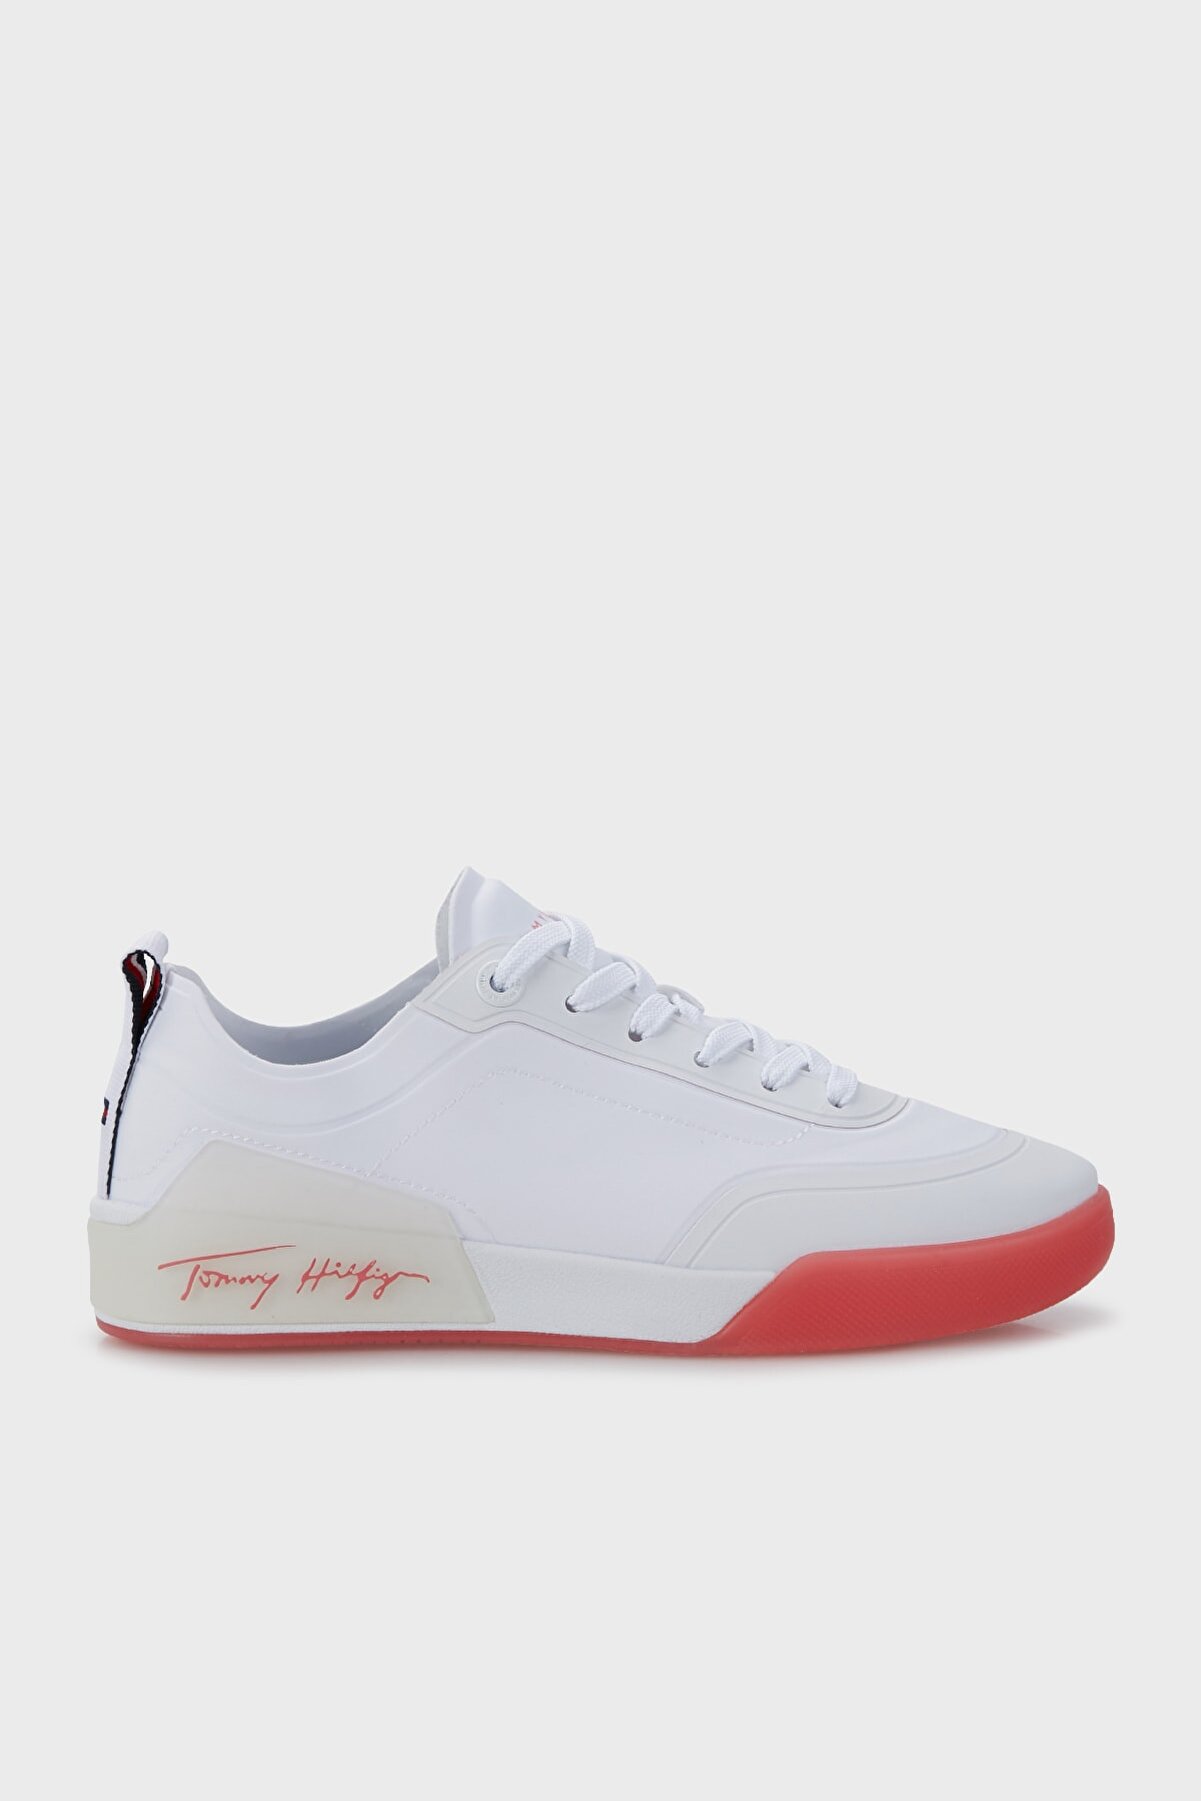 Tommy Hilfiger Sneaker Ayakkabı Kadın Ayakkabı Fw0fw06325 Xkl